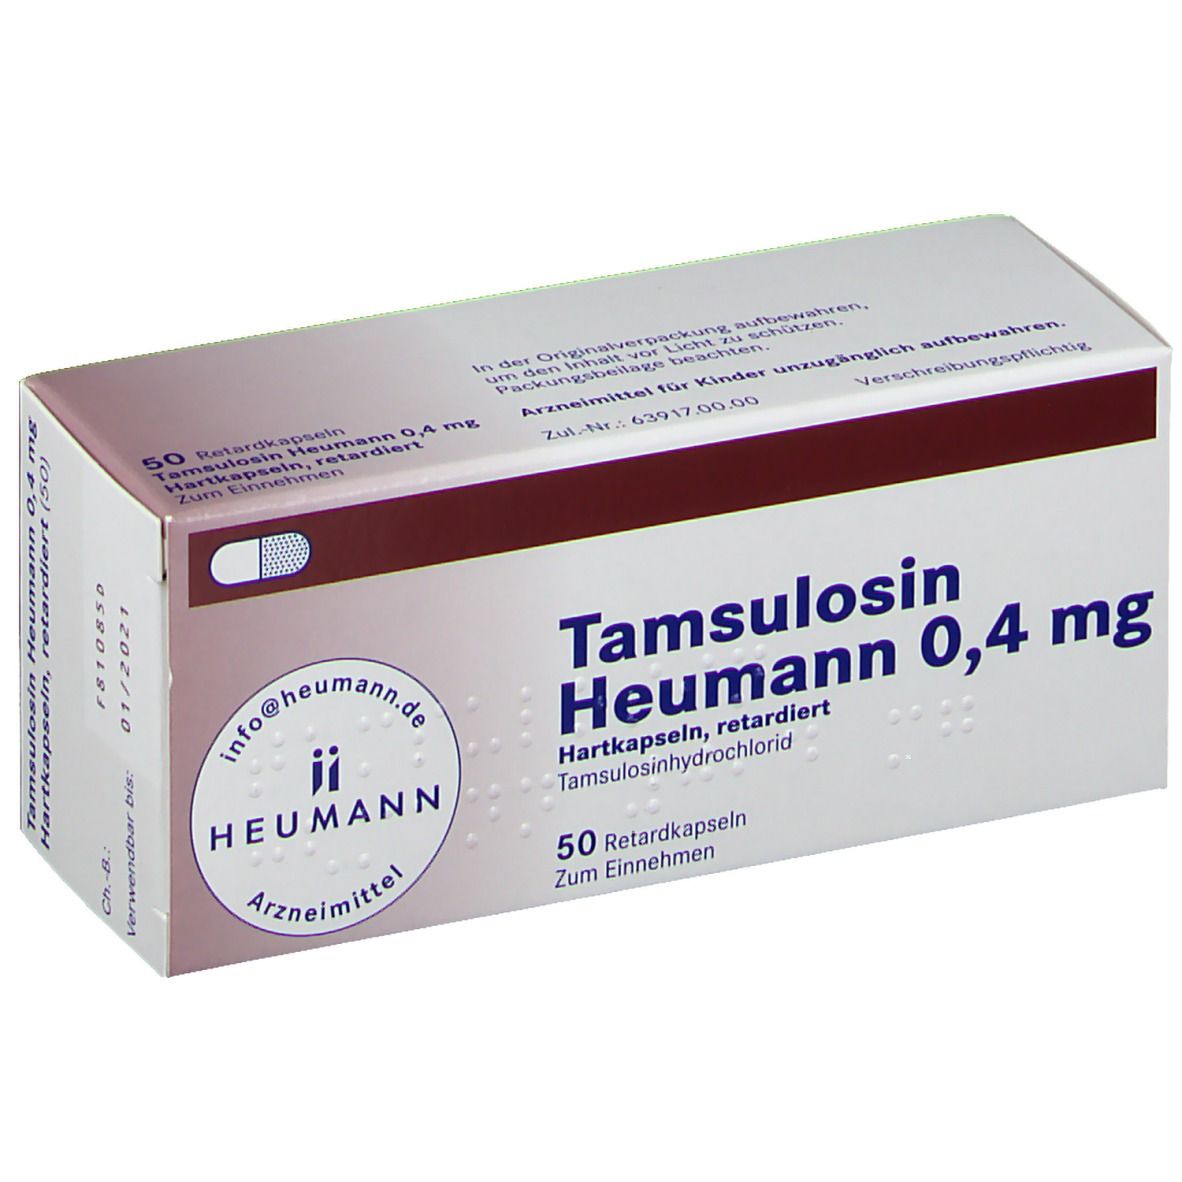 Tamsulosin Heumann 0,4 mg Hartkapseln retardiert